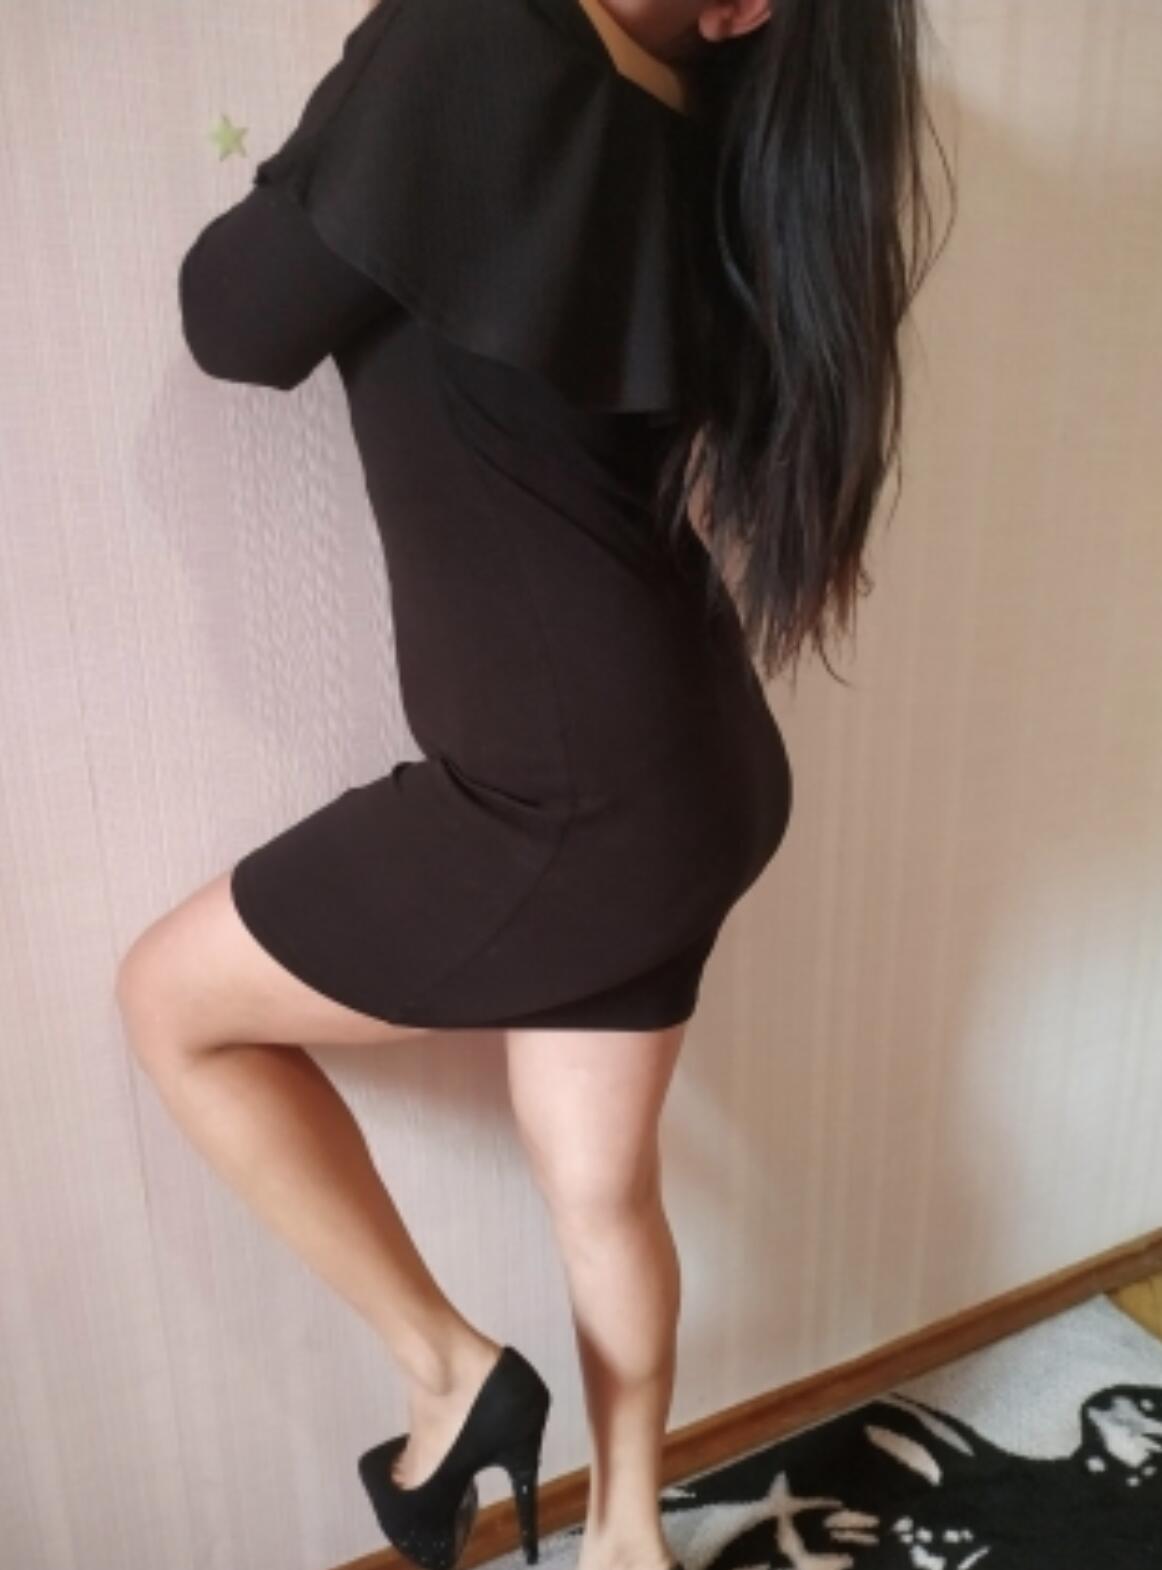 Проститутка София, фото 2, тел: 0637316702. В центре города - Киев